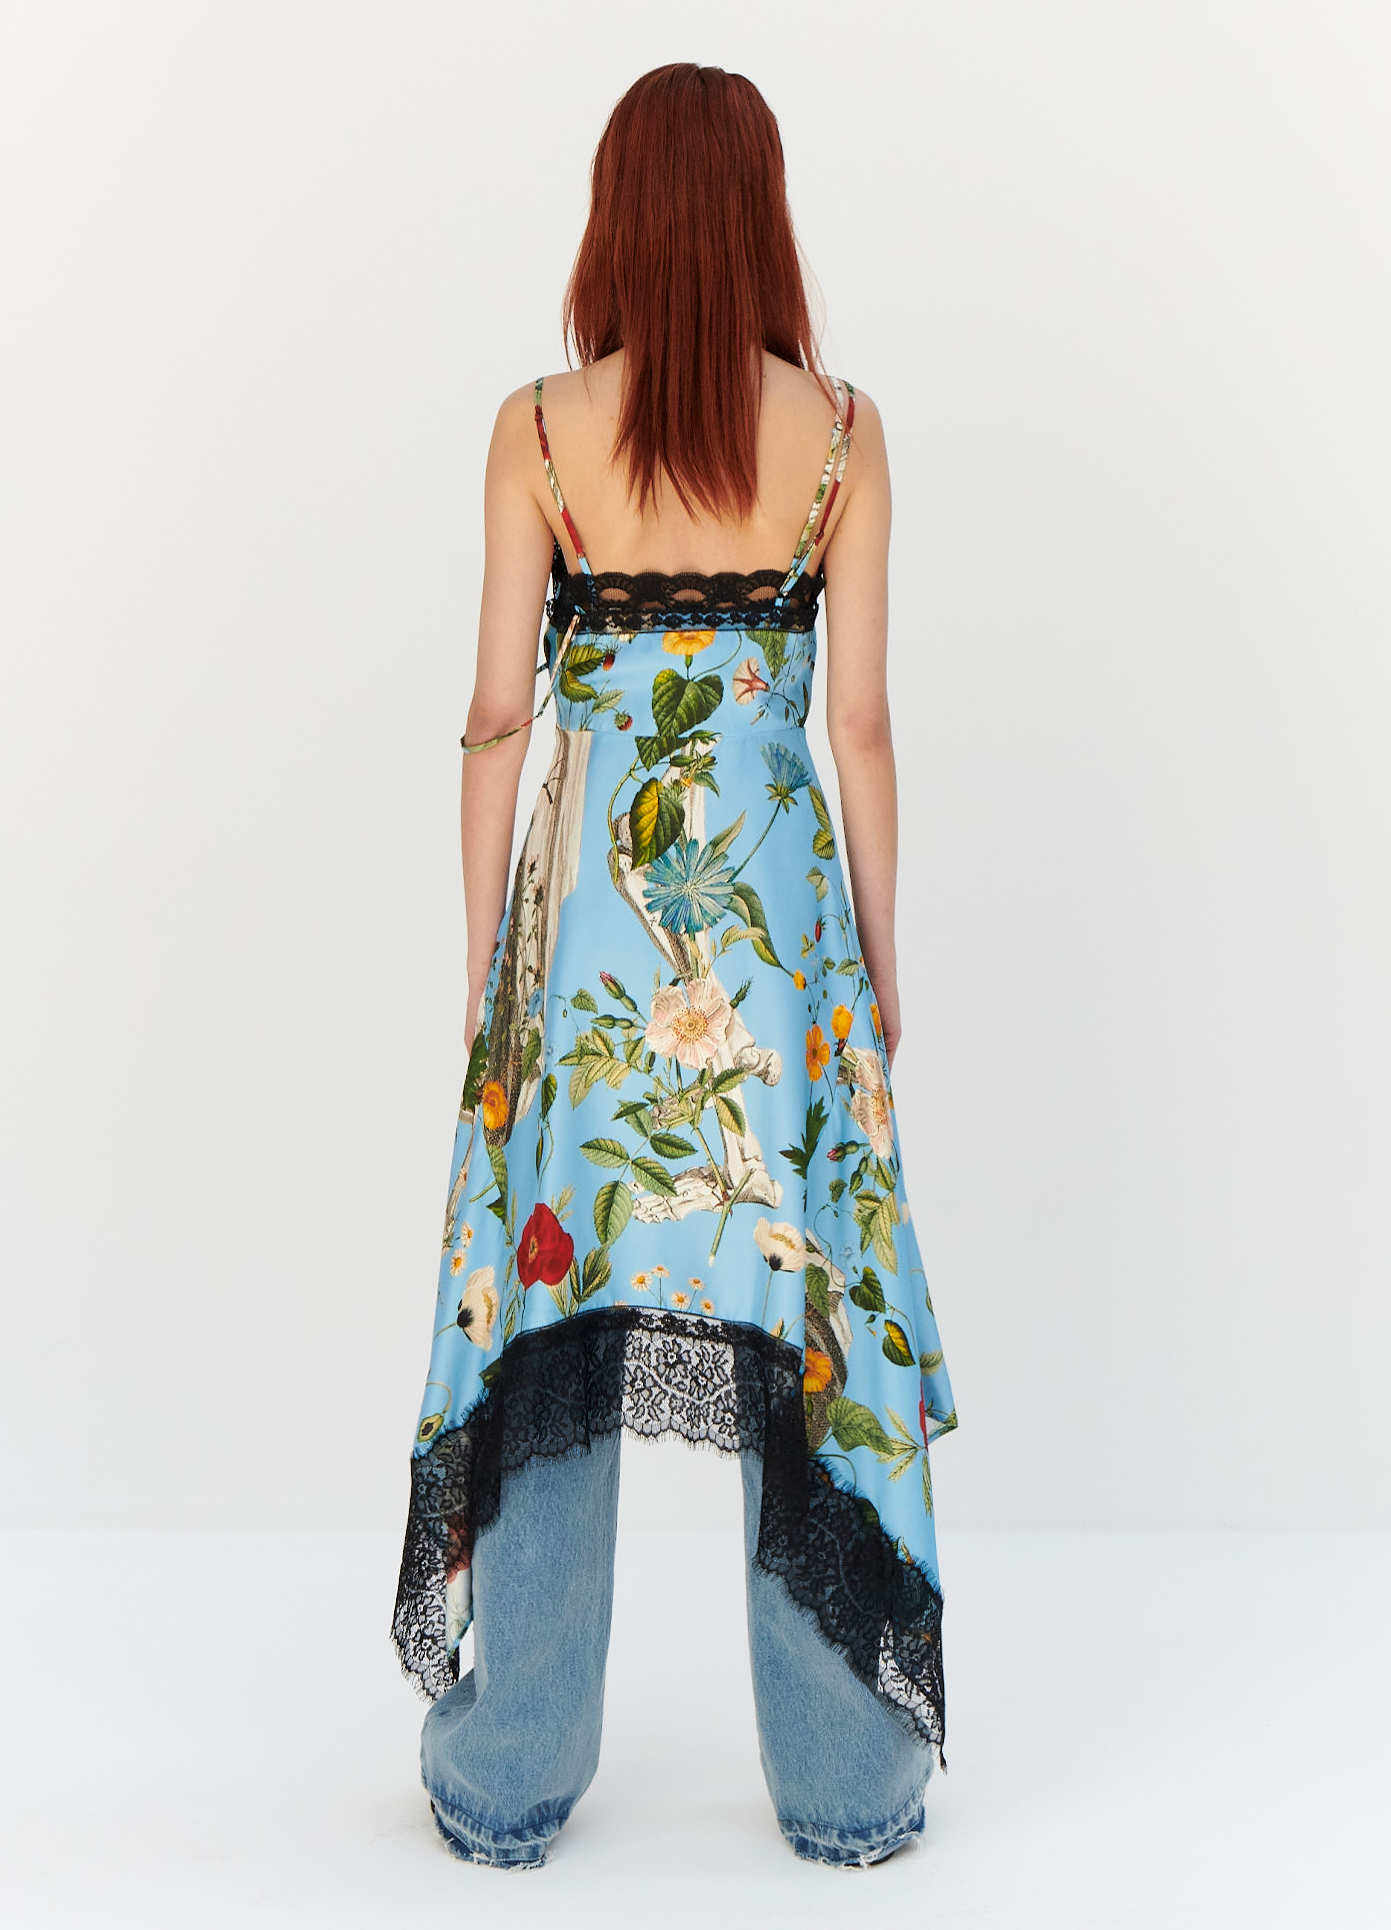 MONSE Floral Skeleton Print Slip Dress in Blue Multi on model full back view